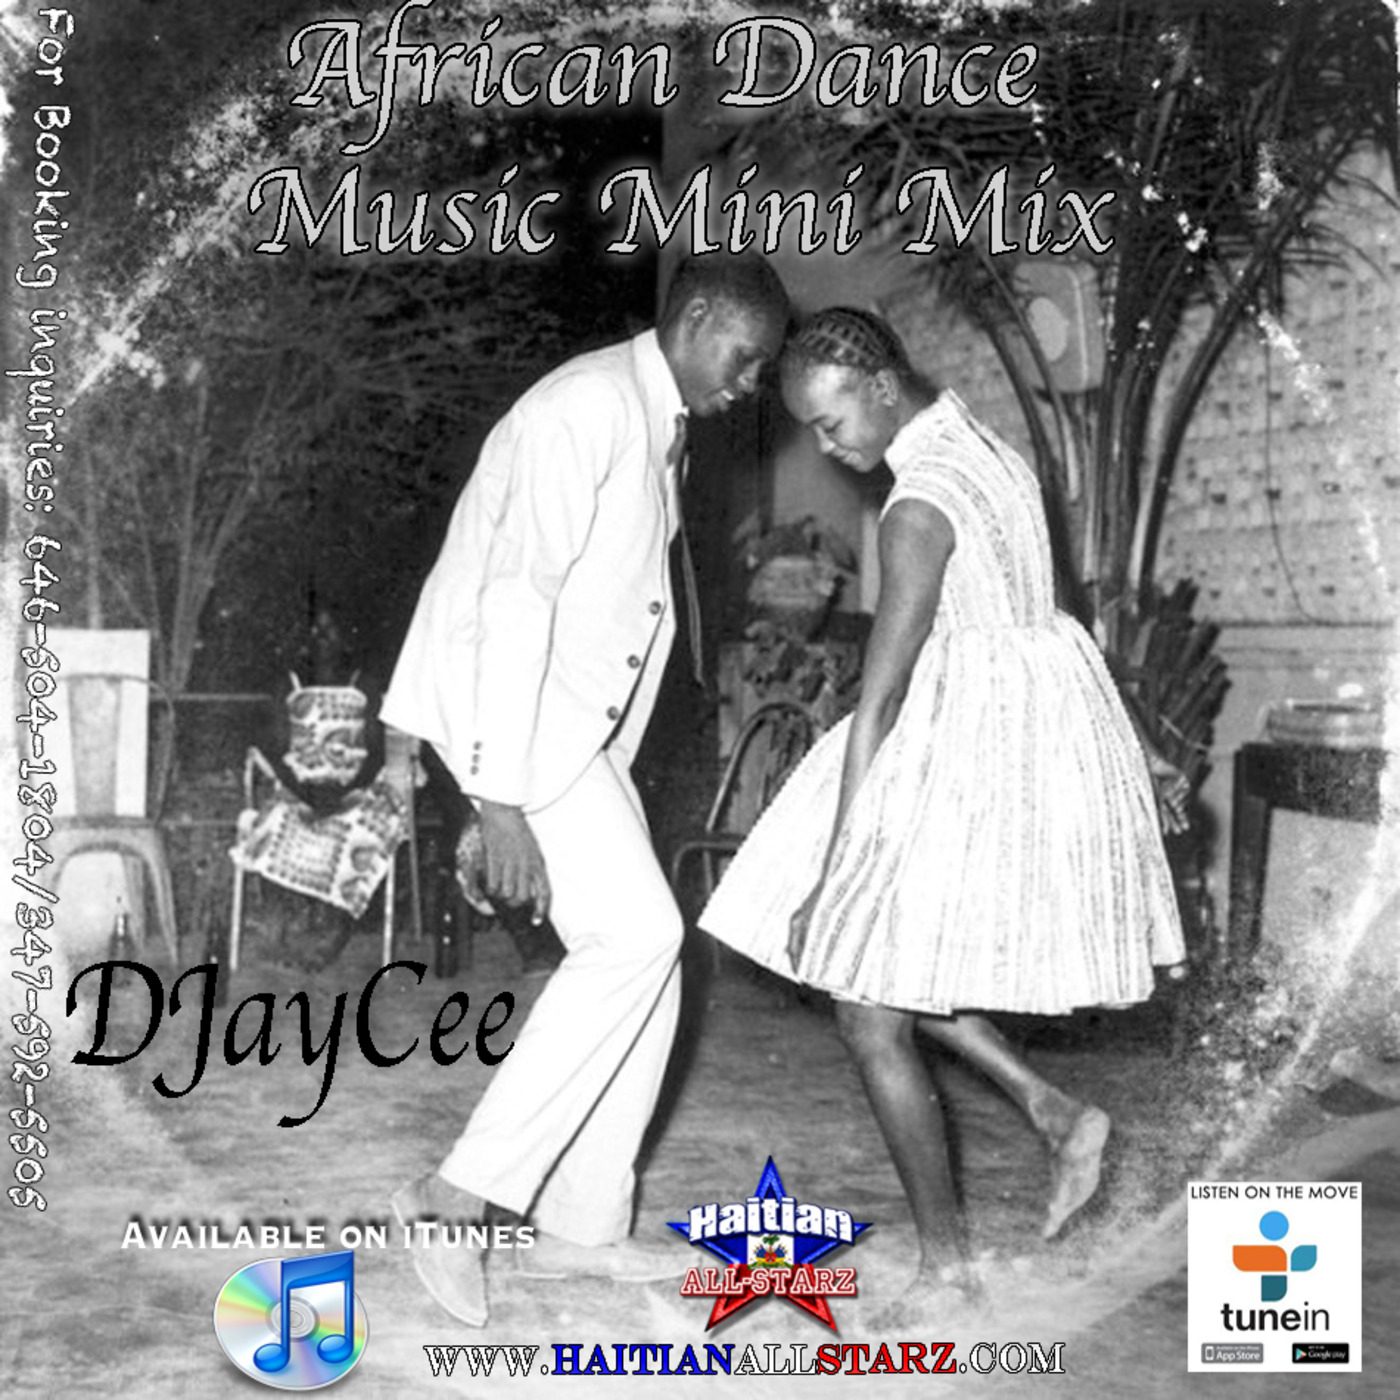 African Dance Music Mini-Mix - DJayCee {Haitian All-StarZ DJ}